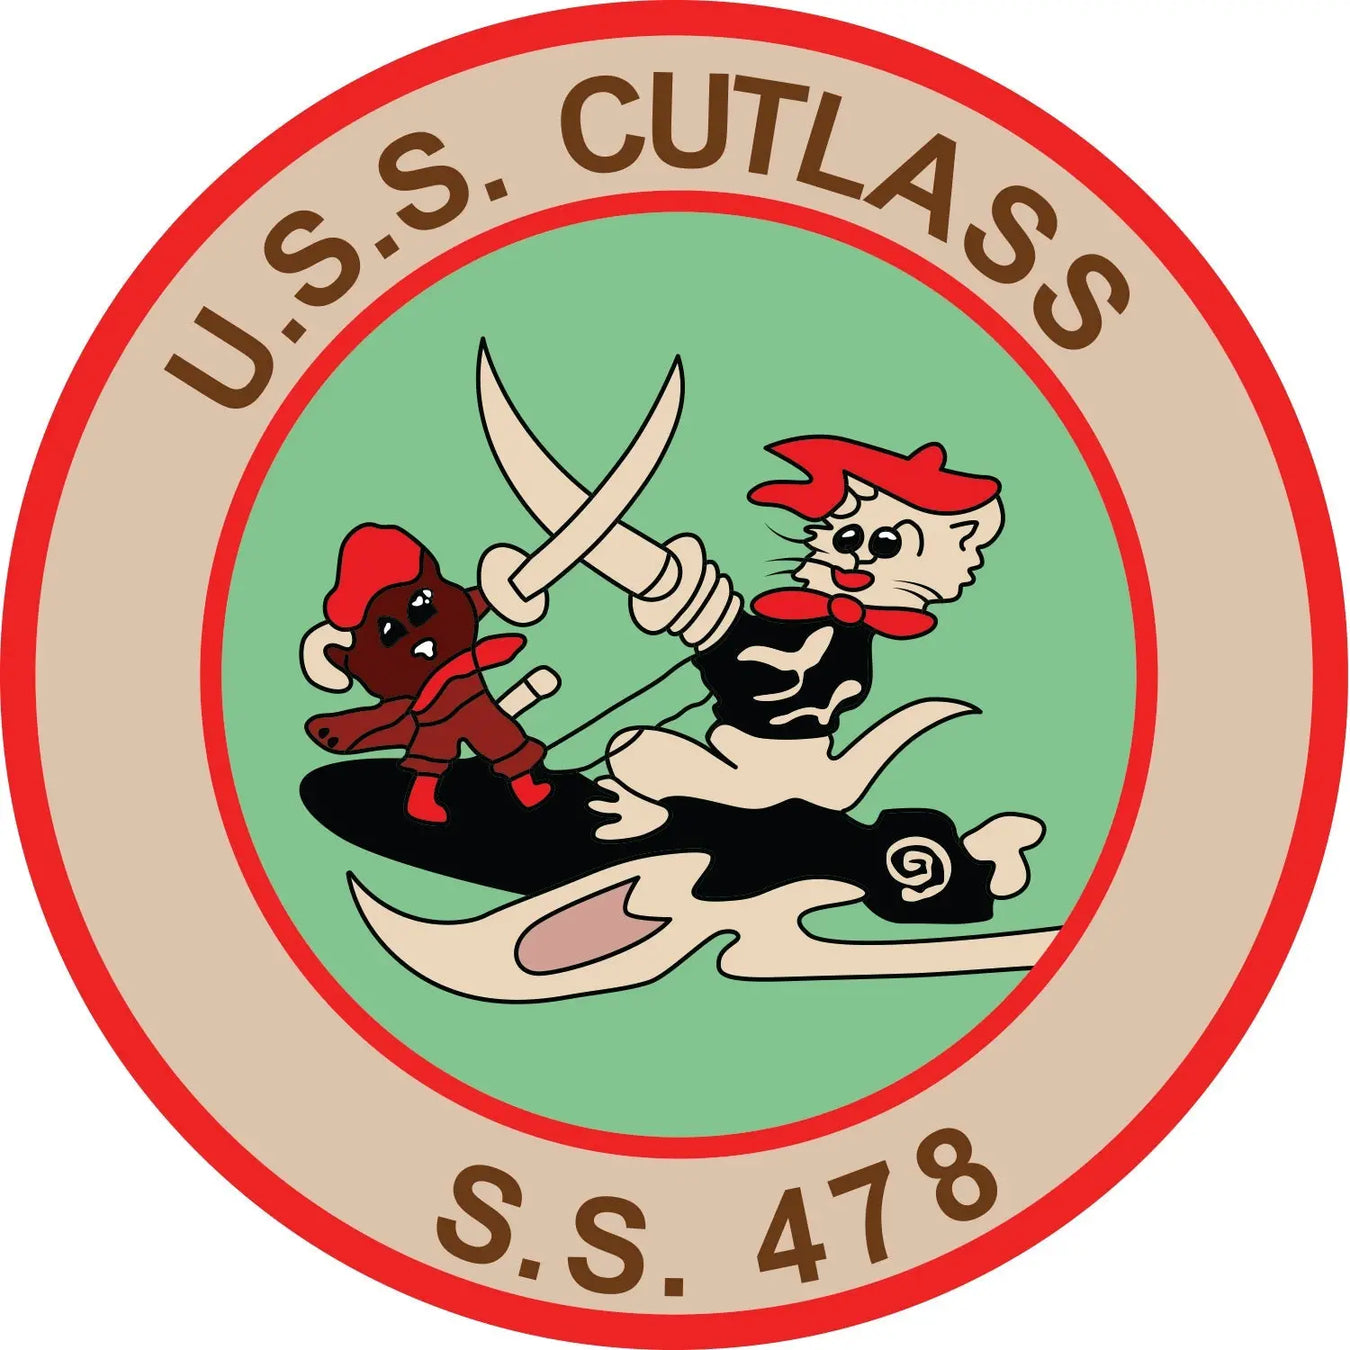 USS Cutlass (SS-478)